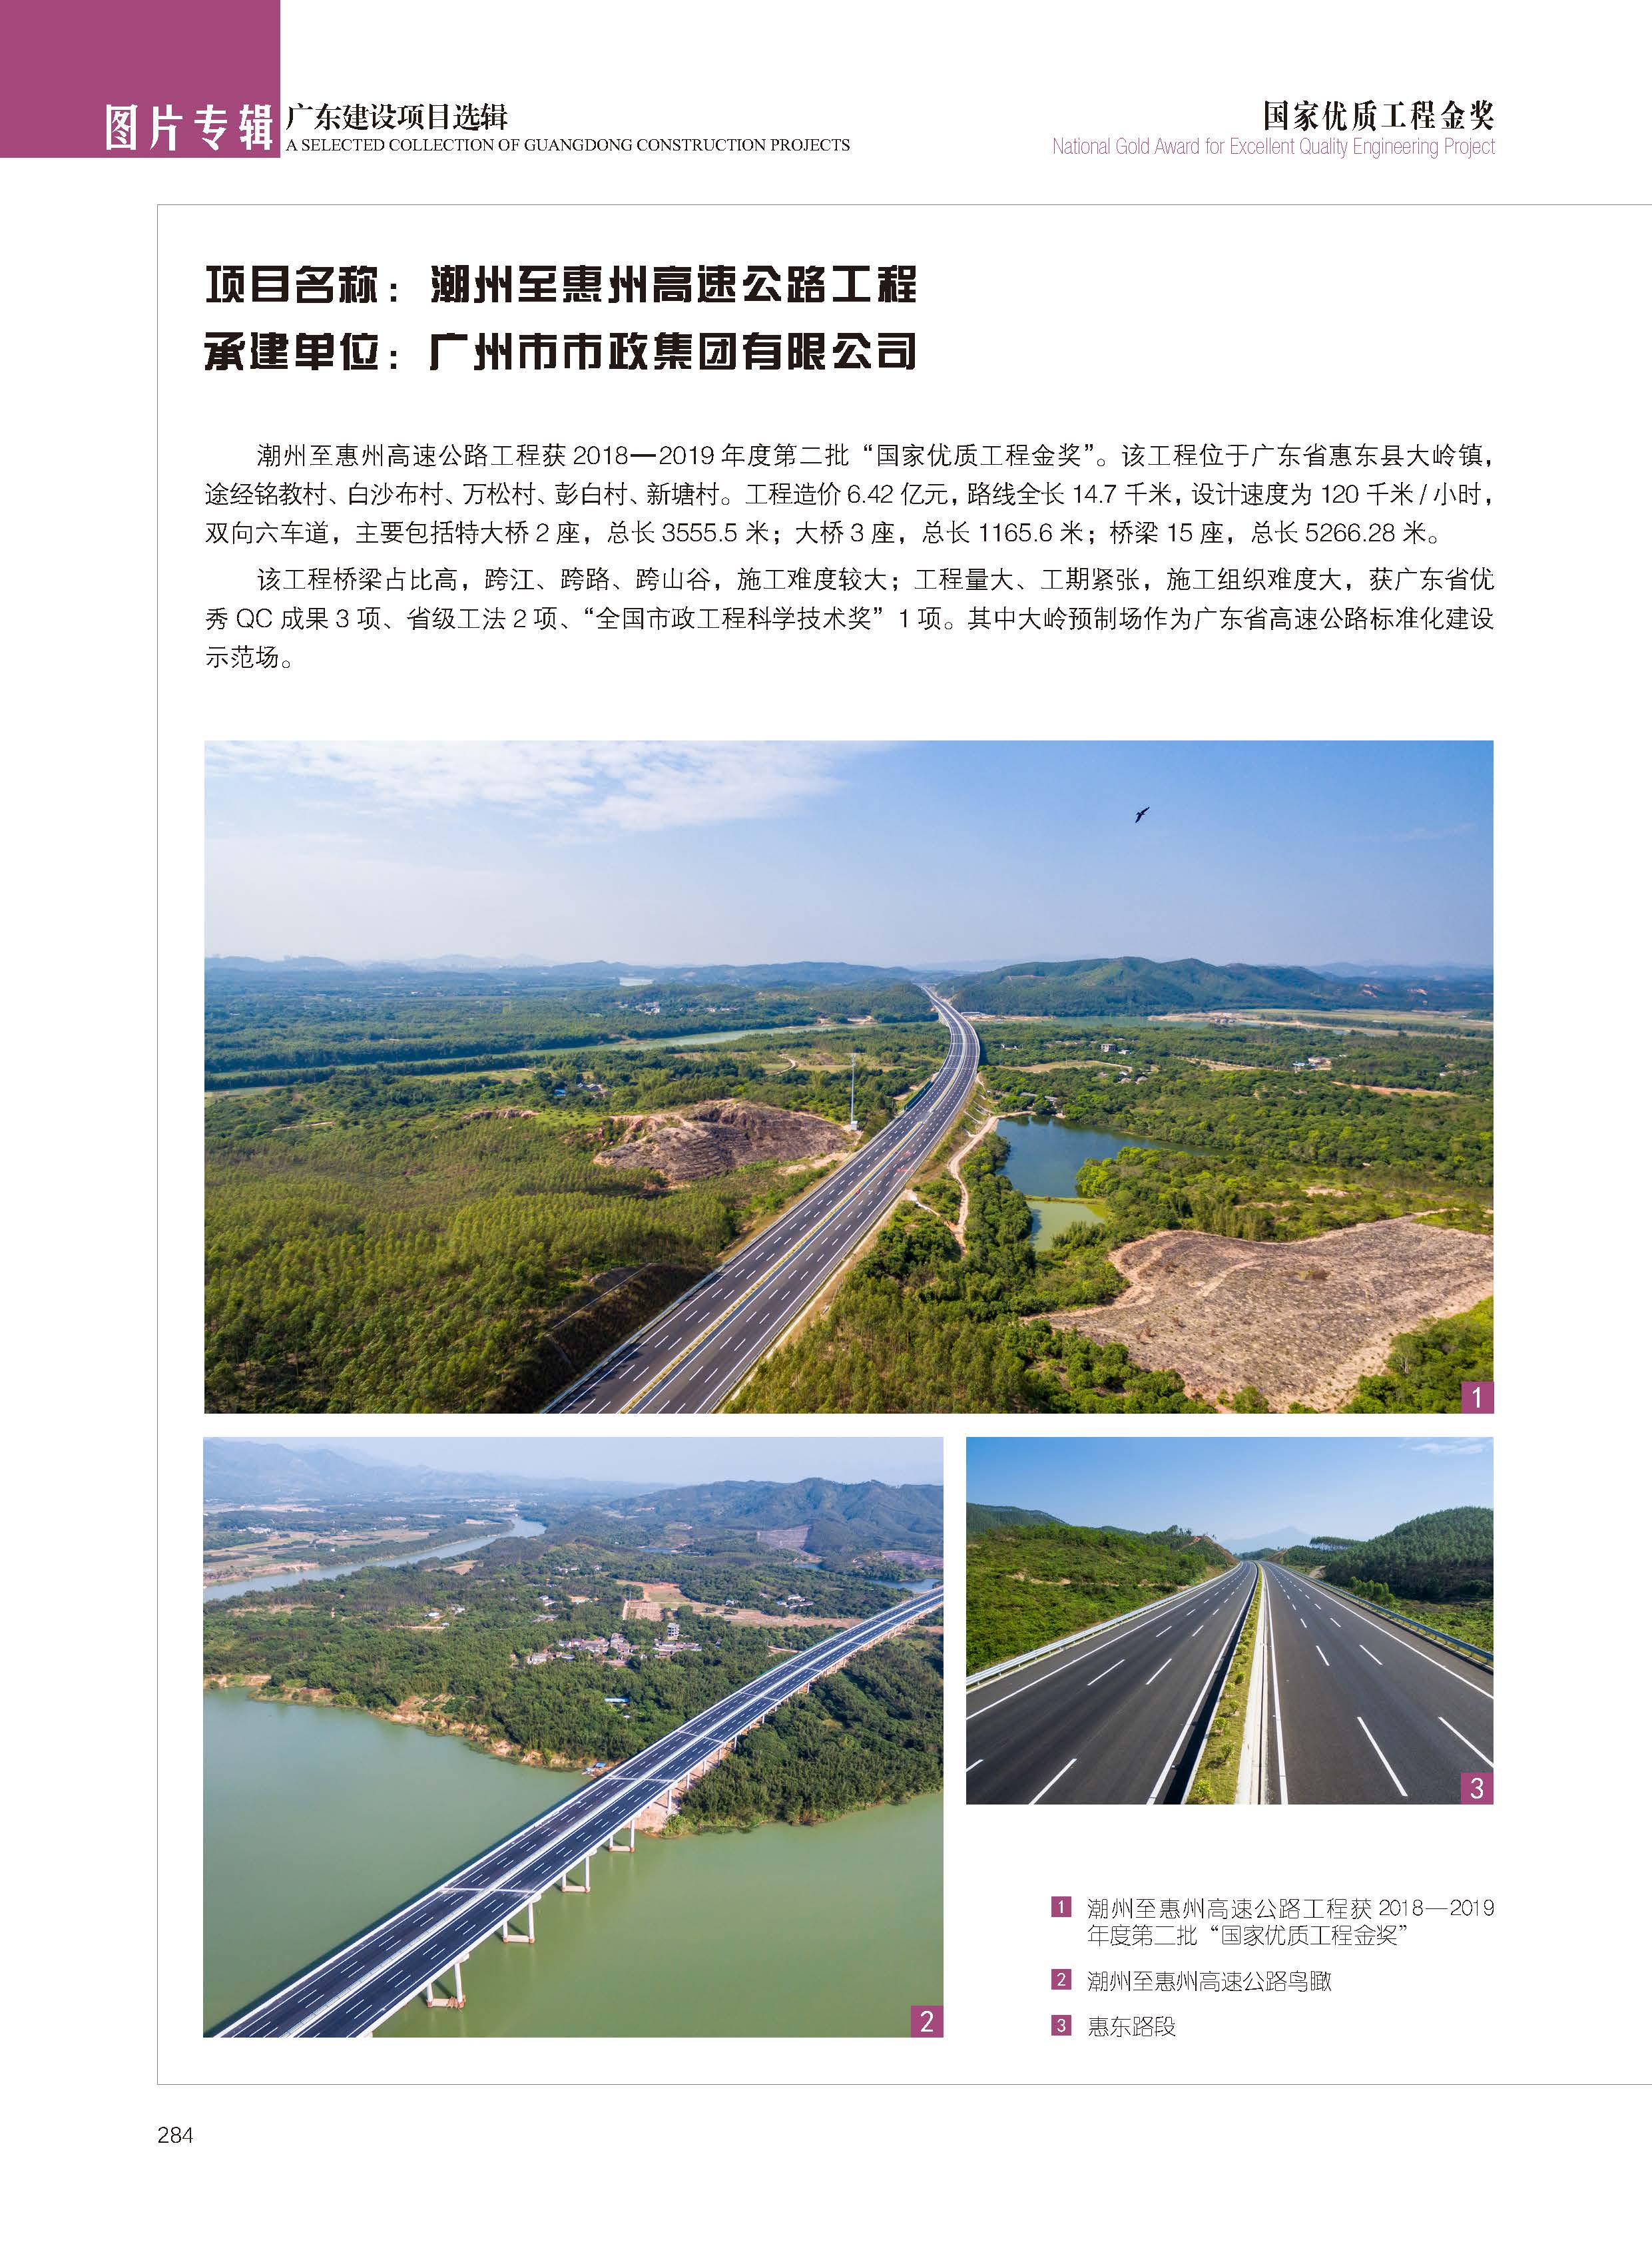 潮州至惠州高速公路工程.jpg